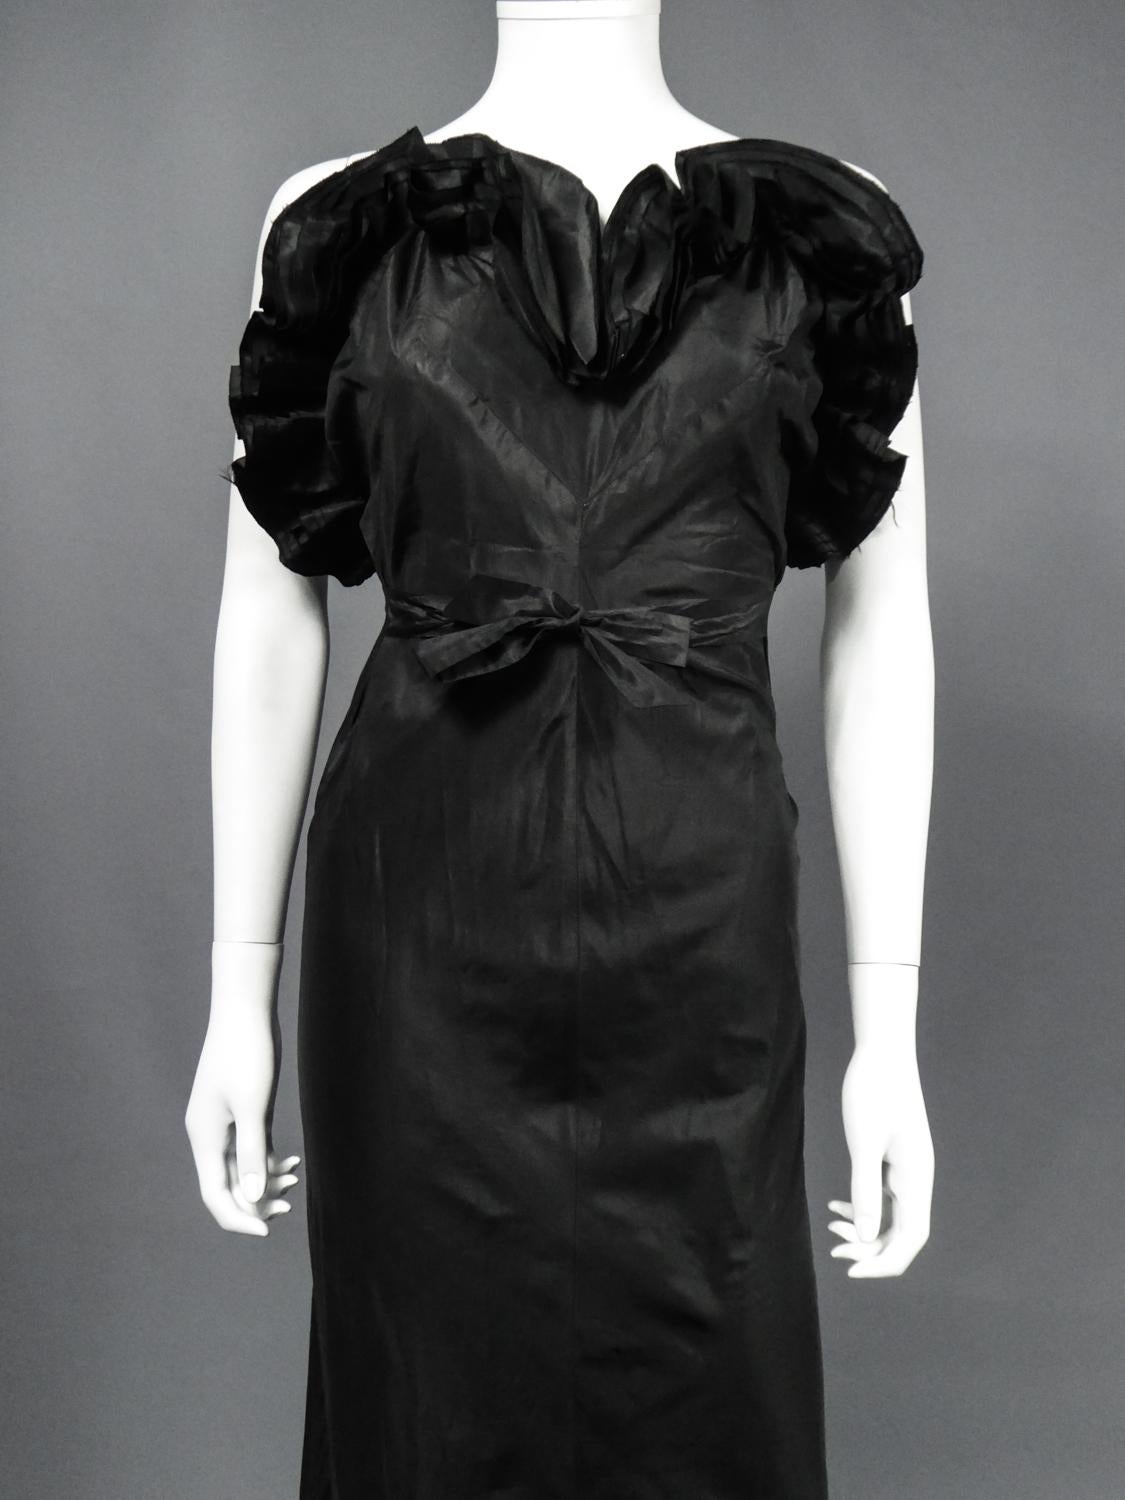 1935 dress